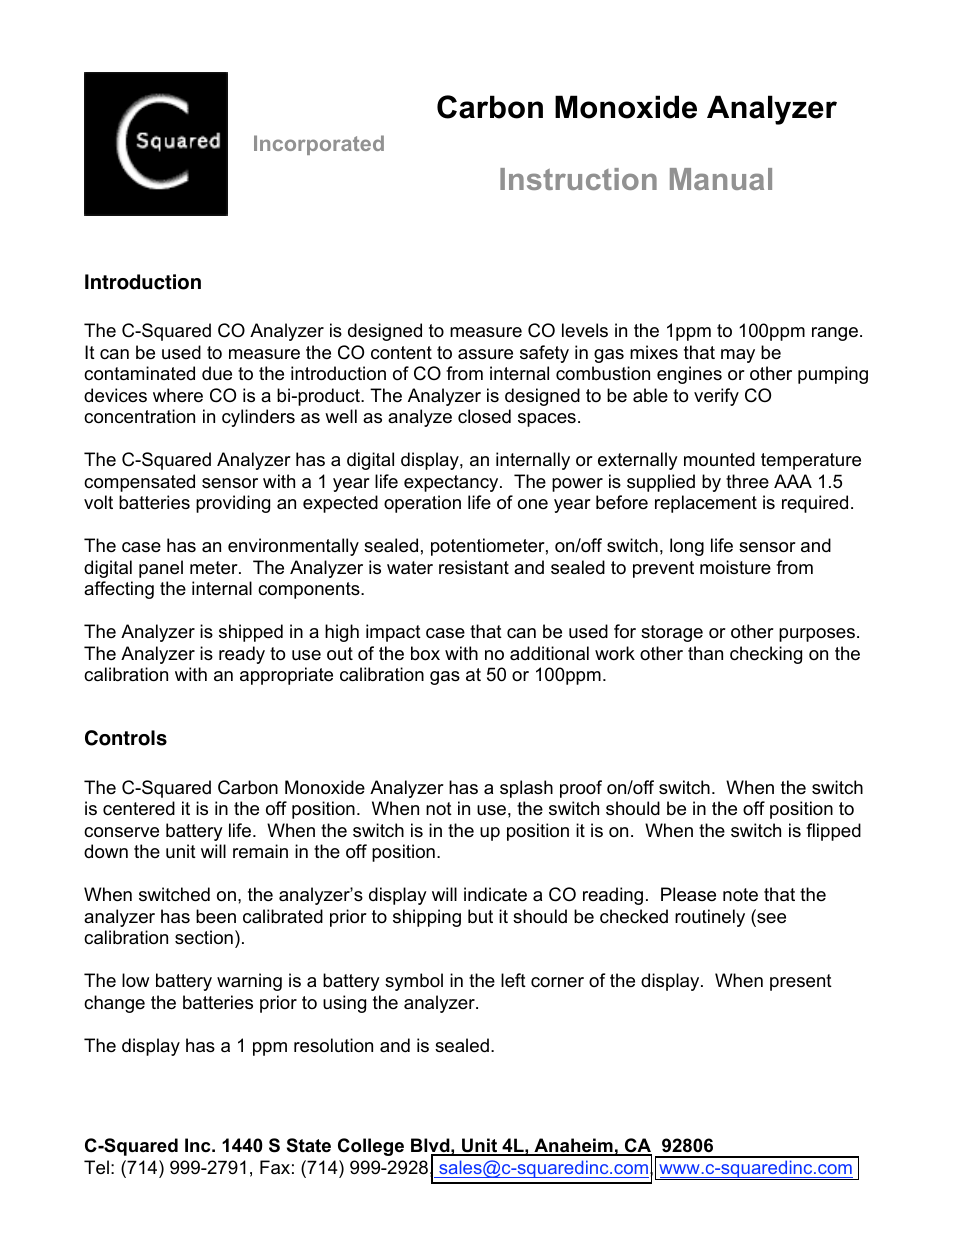 CO Analyzer Manual